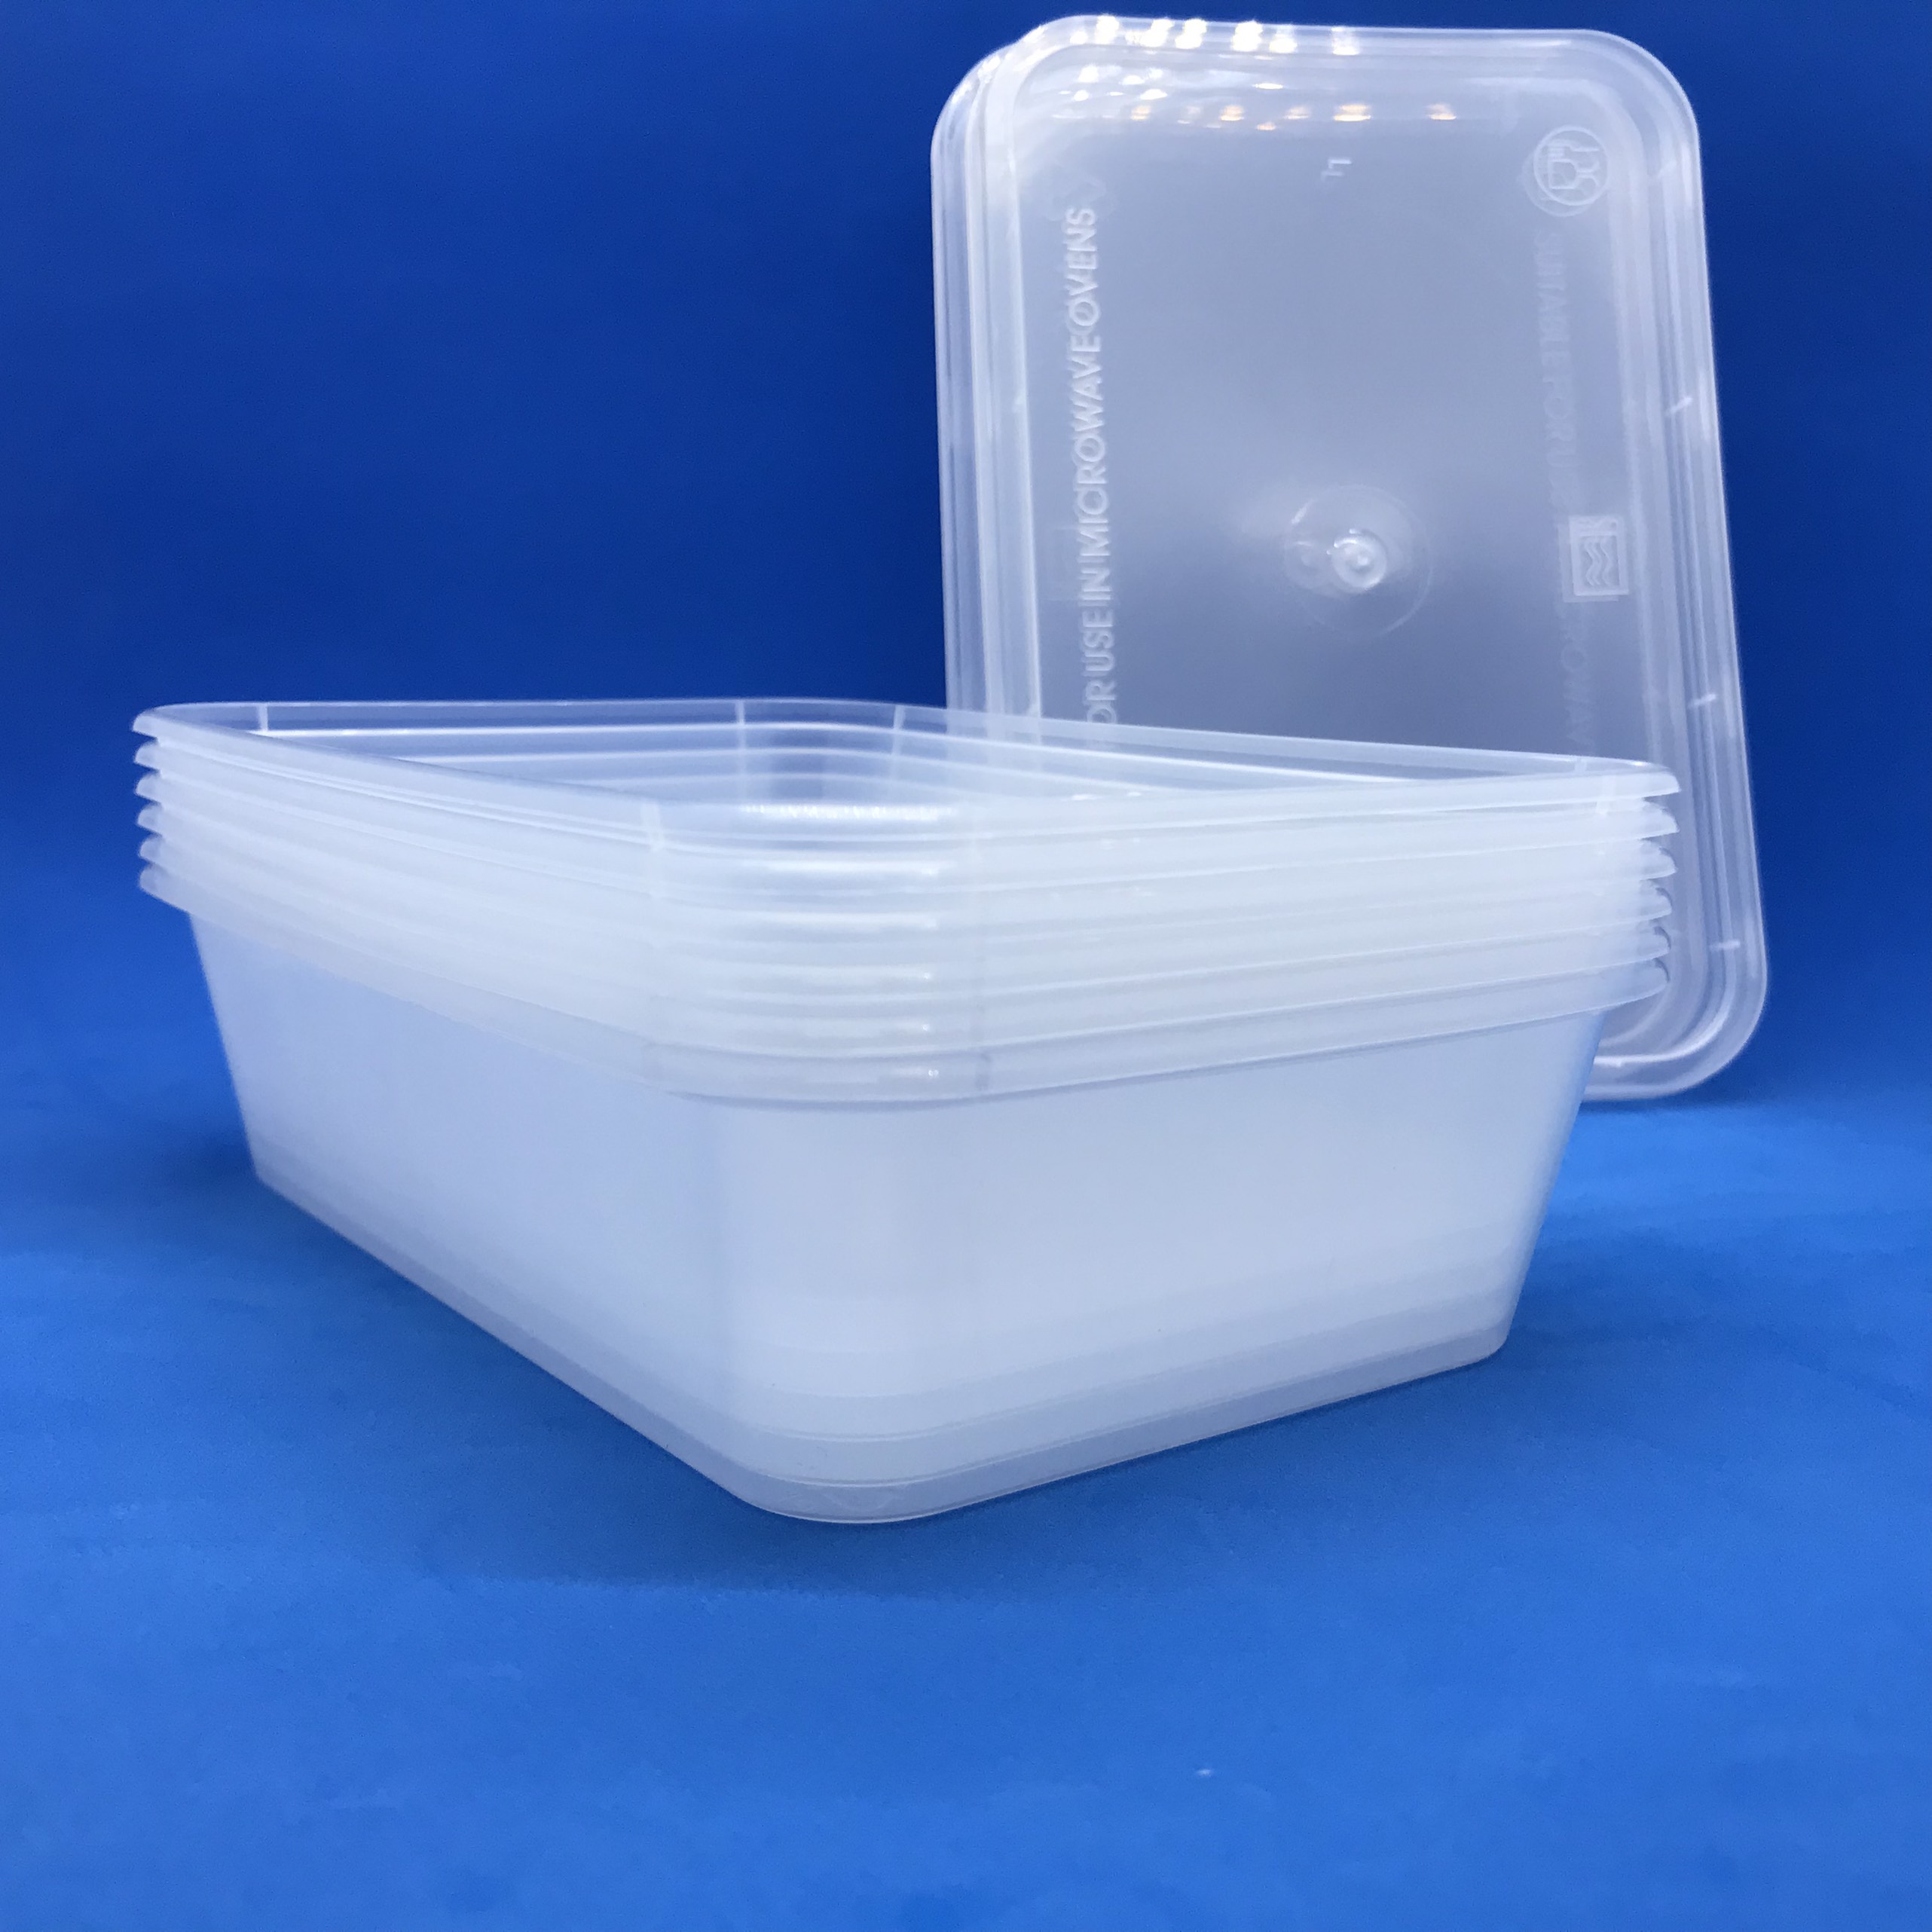 Set 10 hộp nhựa chữ nhật mỏng đựng thực phẩm Đại Đồng Tiến 100% nhựa PP an toàn cho sức khỏe dùng được cho lò vi sóng